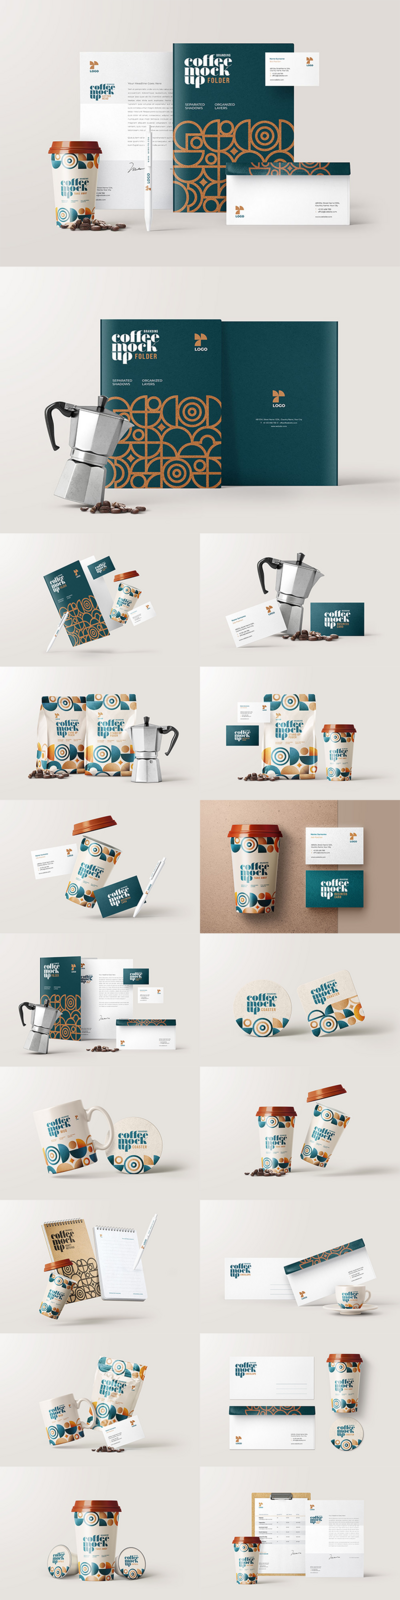 南门网 文创 品牌 vi 包装 样机 产品 潮流 酸性 咖啡 奶茶 饮料 高端